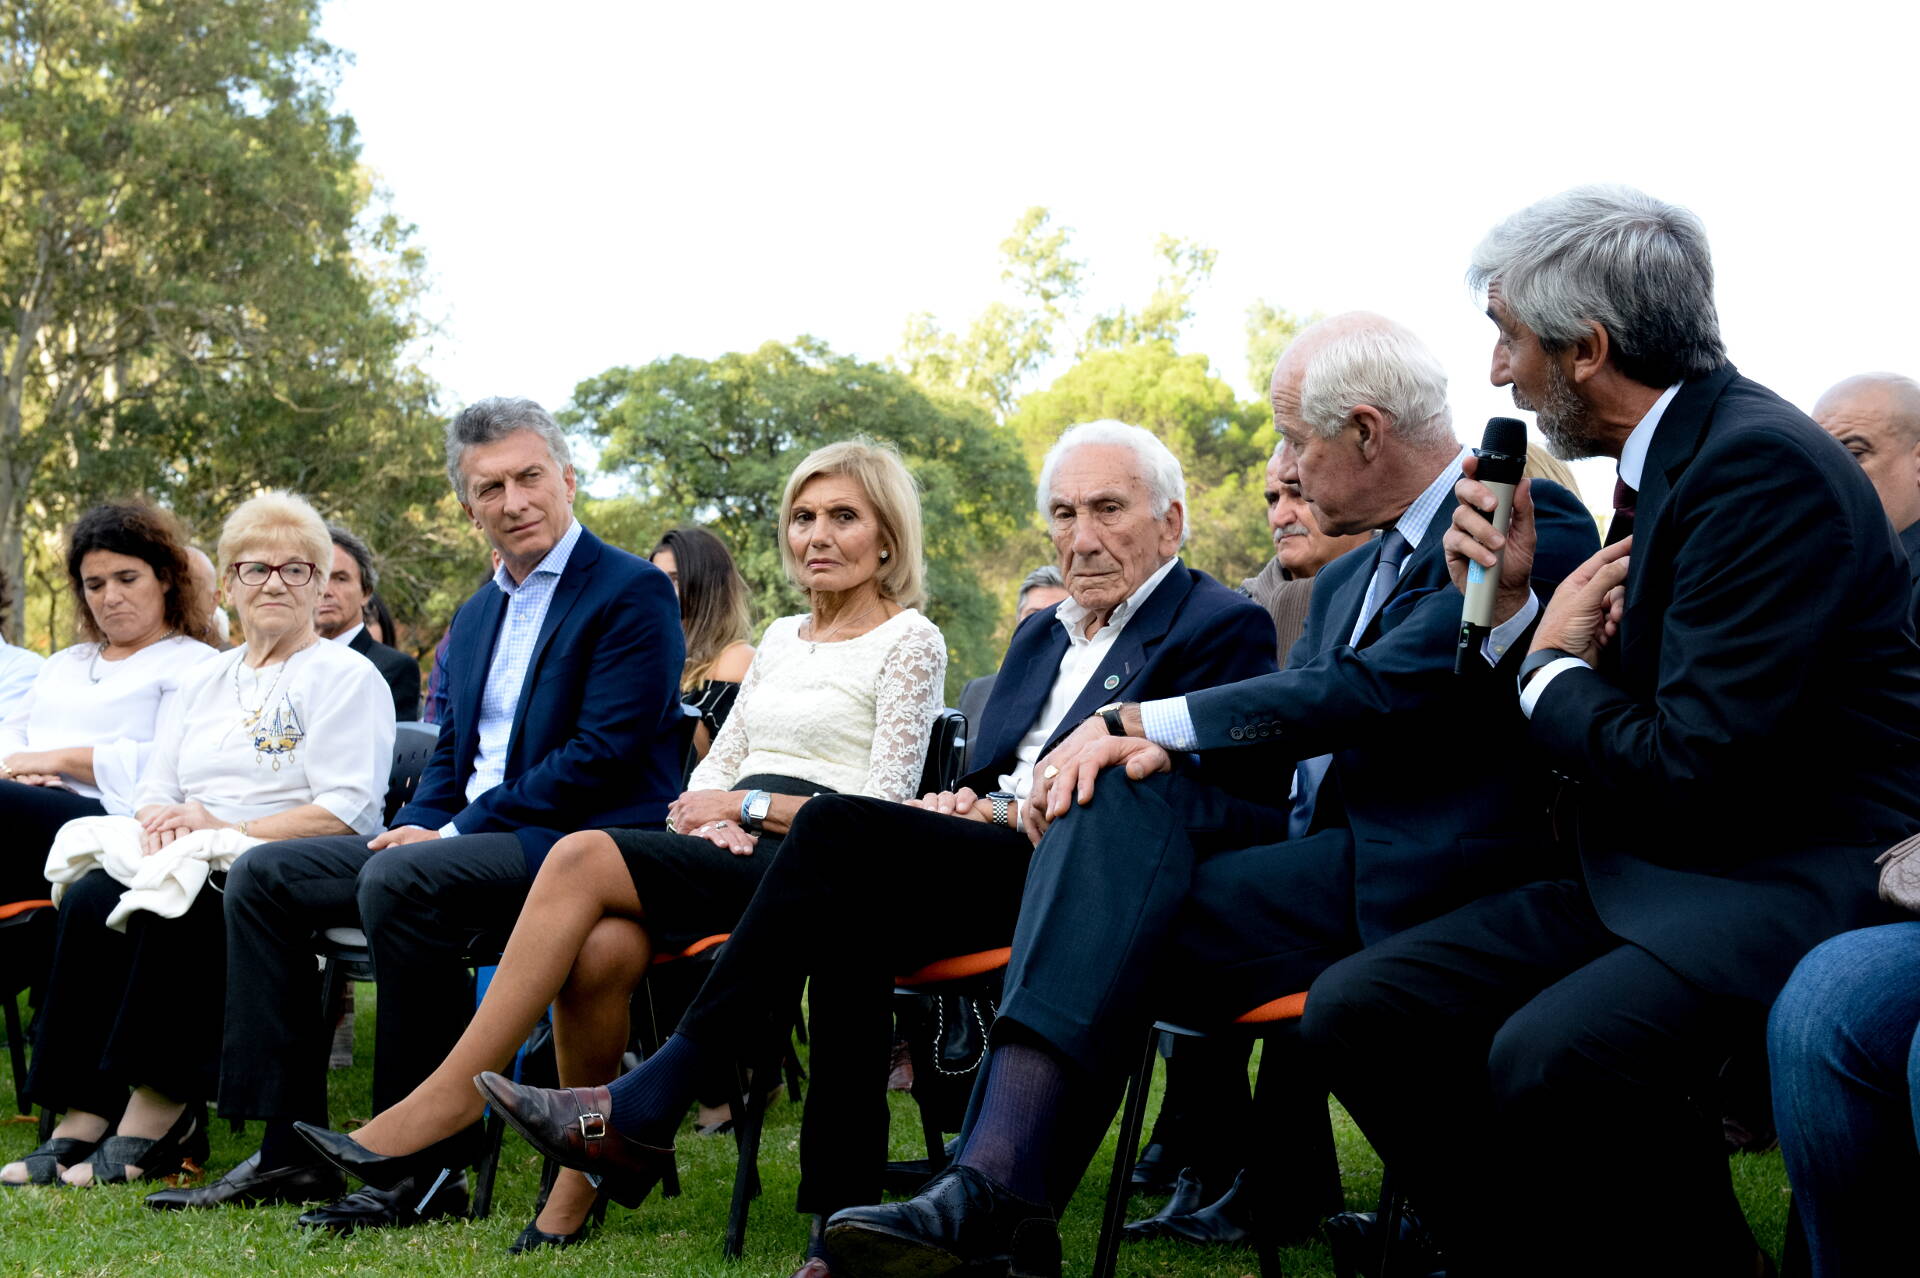 Macri: “Con ellos ahí nuestro sueño seguirá más fuerte que nunca”